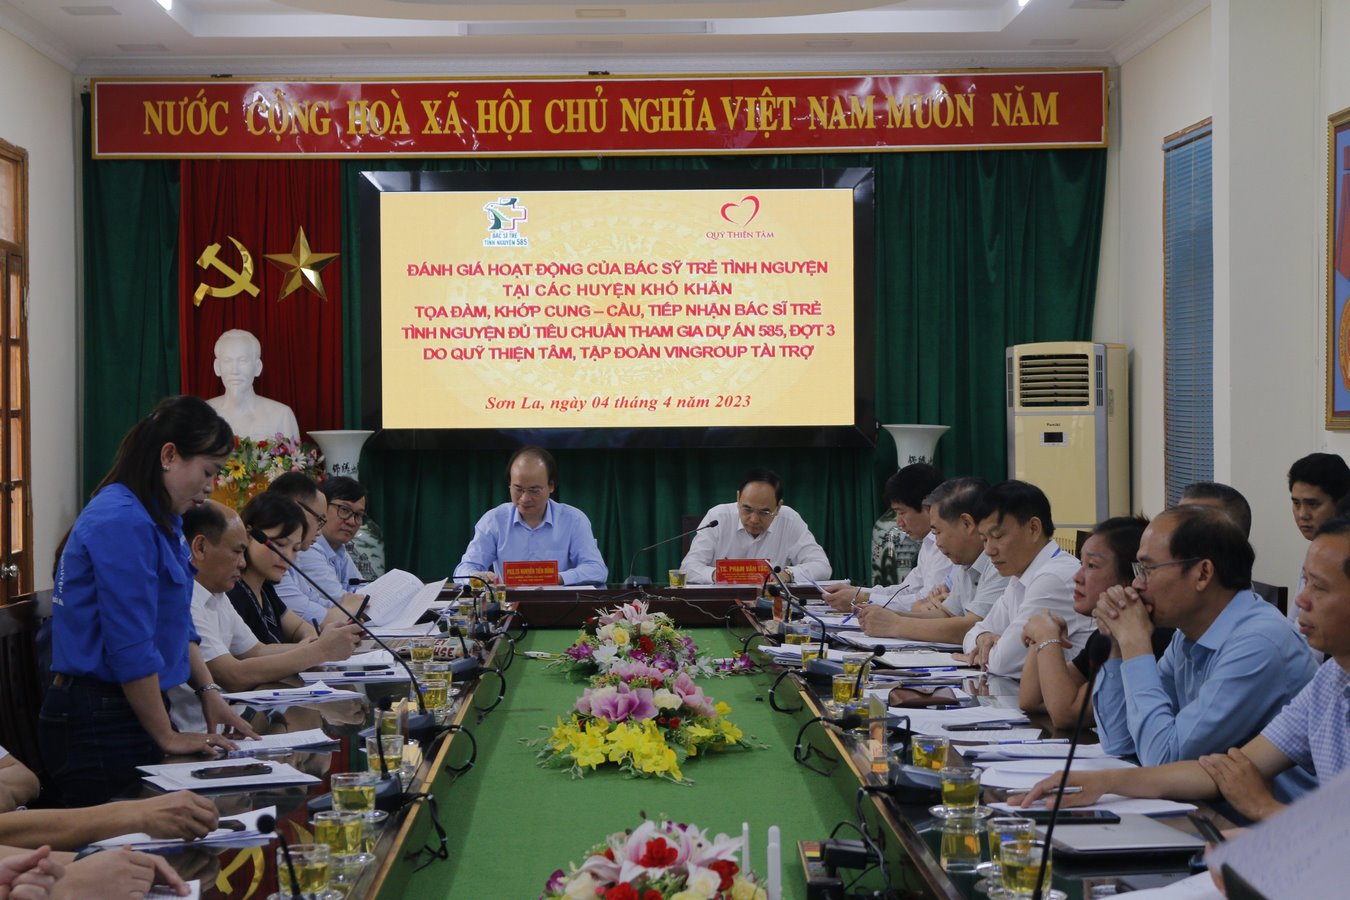 Khớp cung cầu bác sỹ trẻ 585 năm 2023 tại các tỉnh Điện Biên và Sơn La